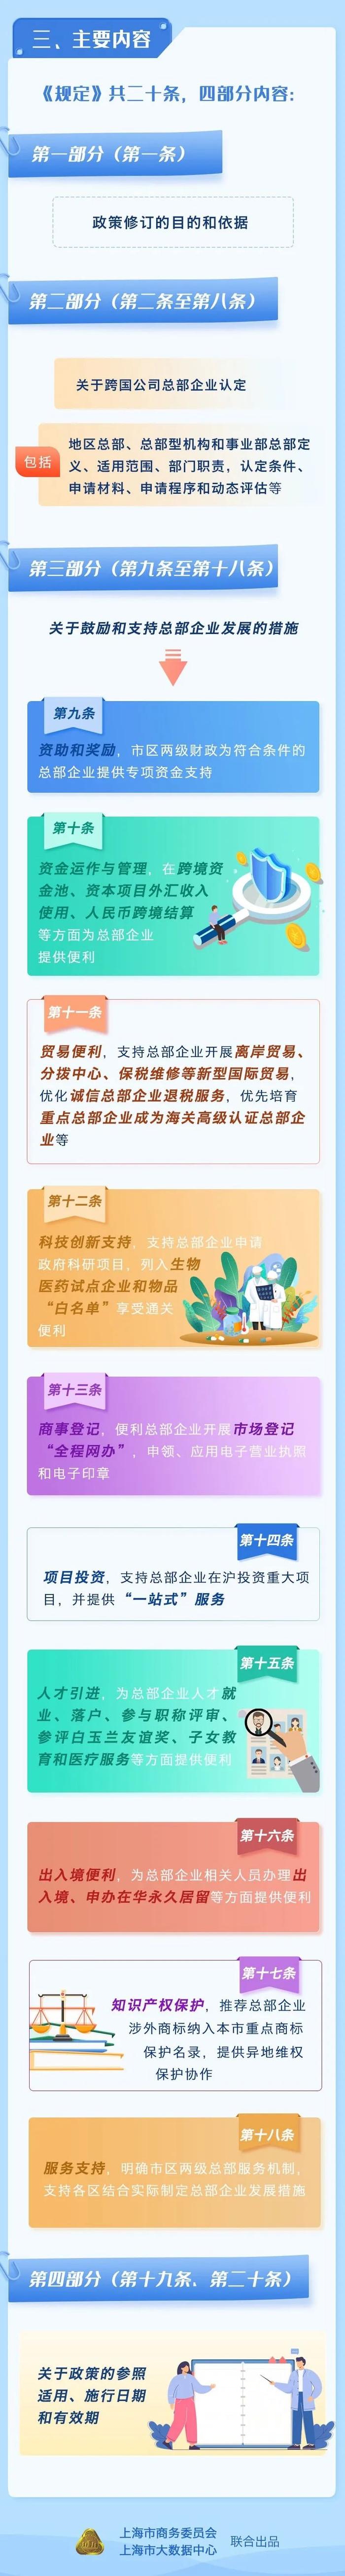 【图解】一图了解《上海市鼓励跨国公司设立地区总部的规定》修订要点